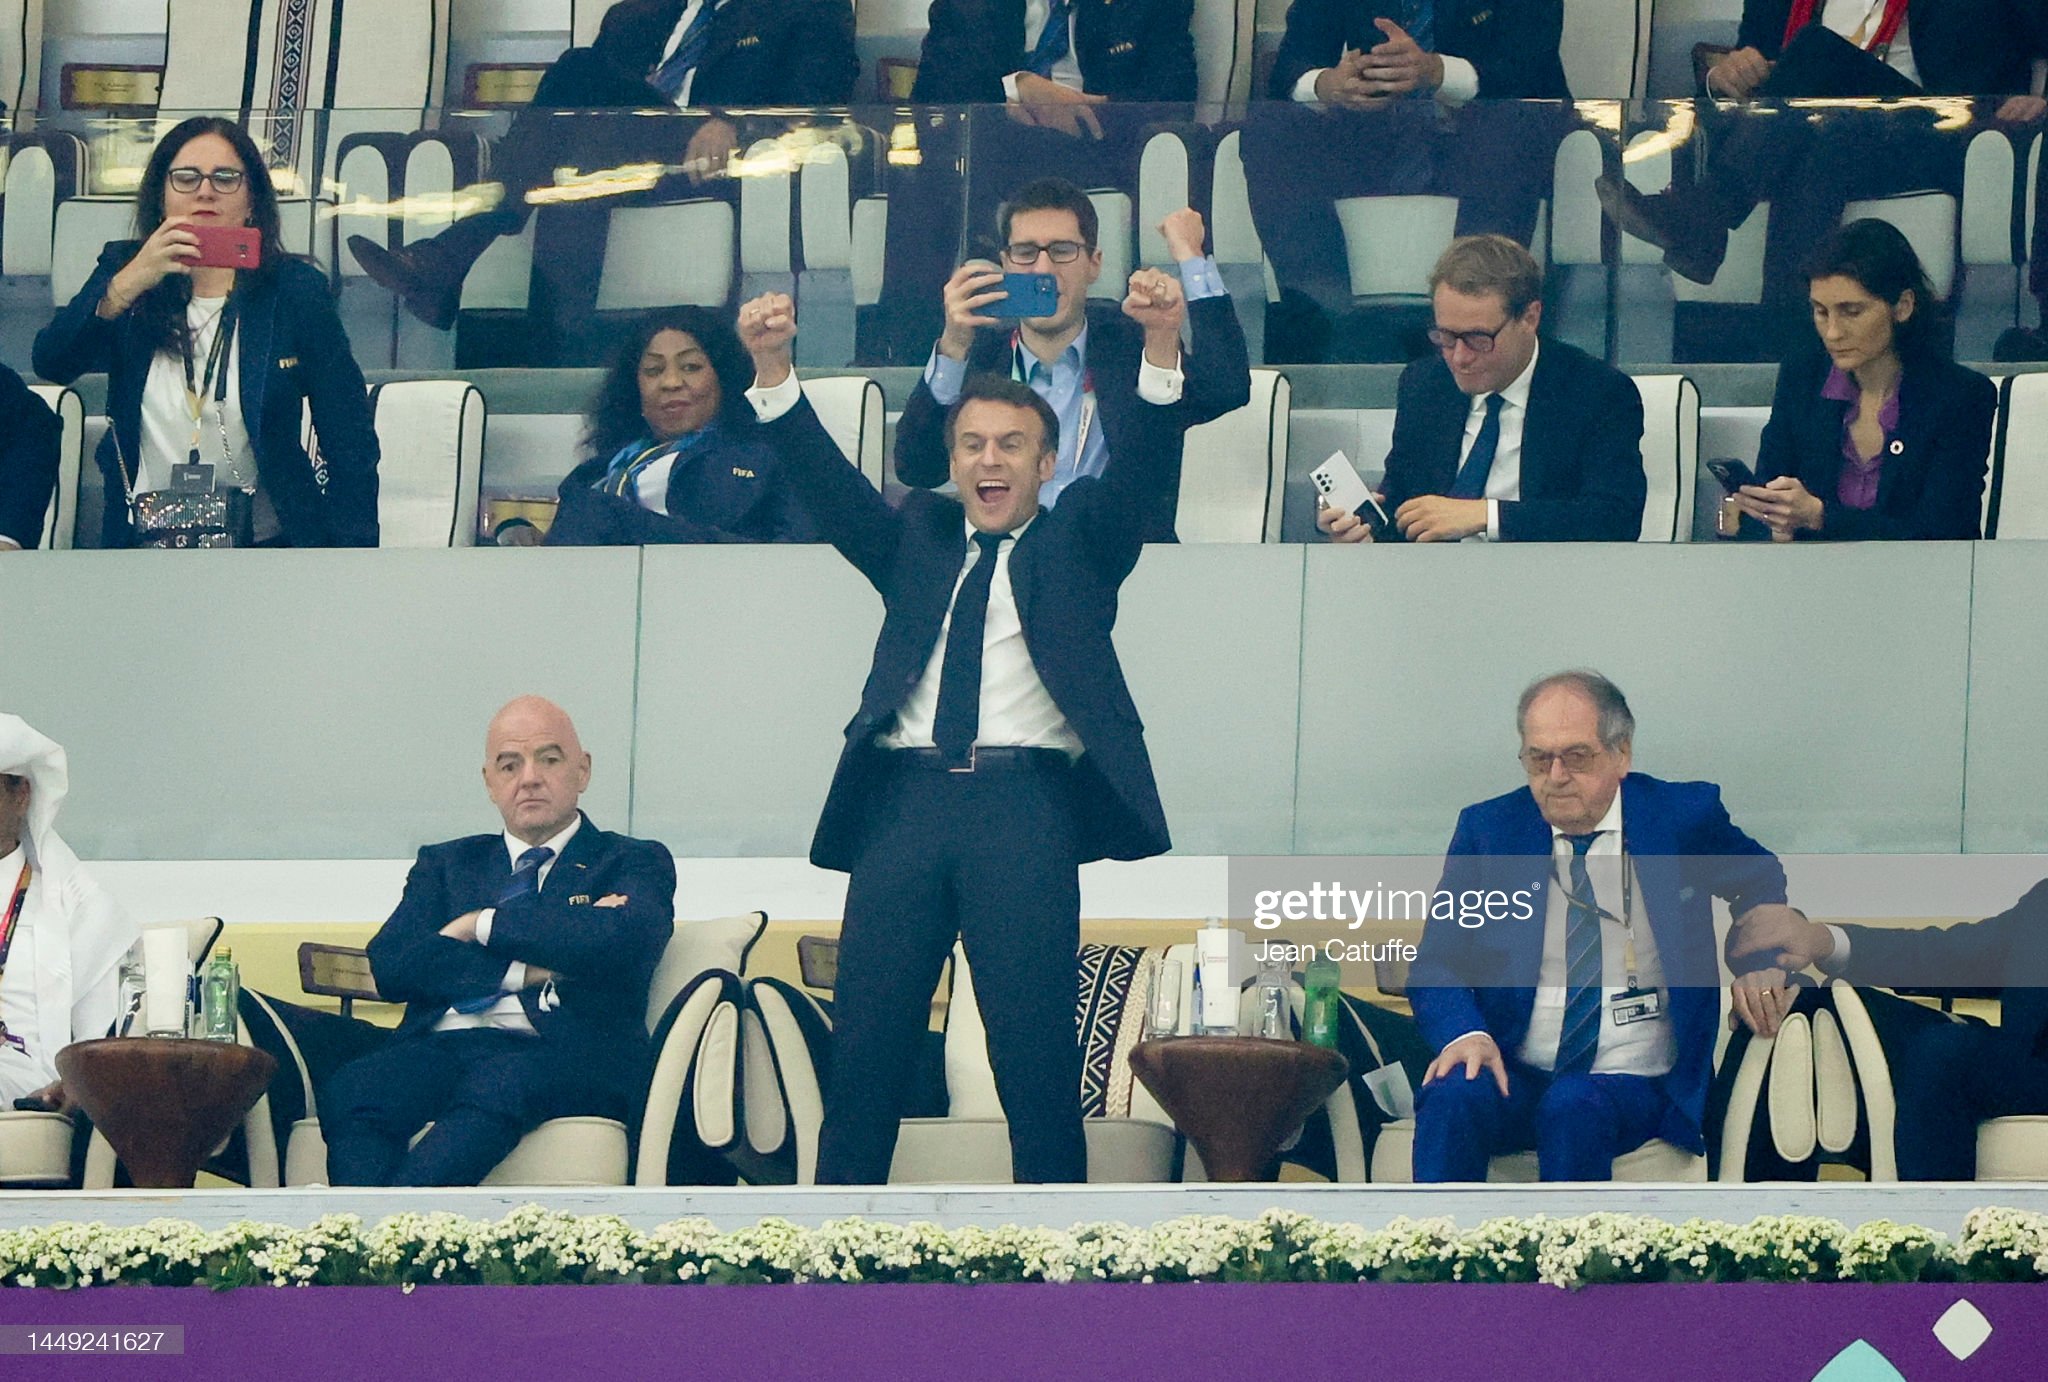 Trong trận thắng 2-0 của đội tuyển Pháp trước đối thủ Morocco, ngoài màn trình diễn của các cầu thủ, những biểu cảm mãnh liệt của Tổng thống Pháp Emmanuel Macron cũng thu hút nhiều ánh nhìn.&nbsp;